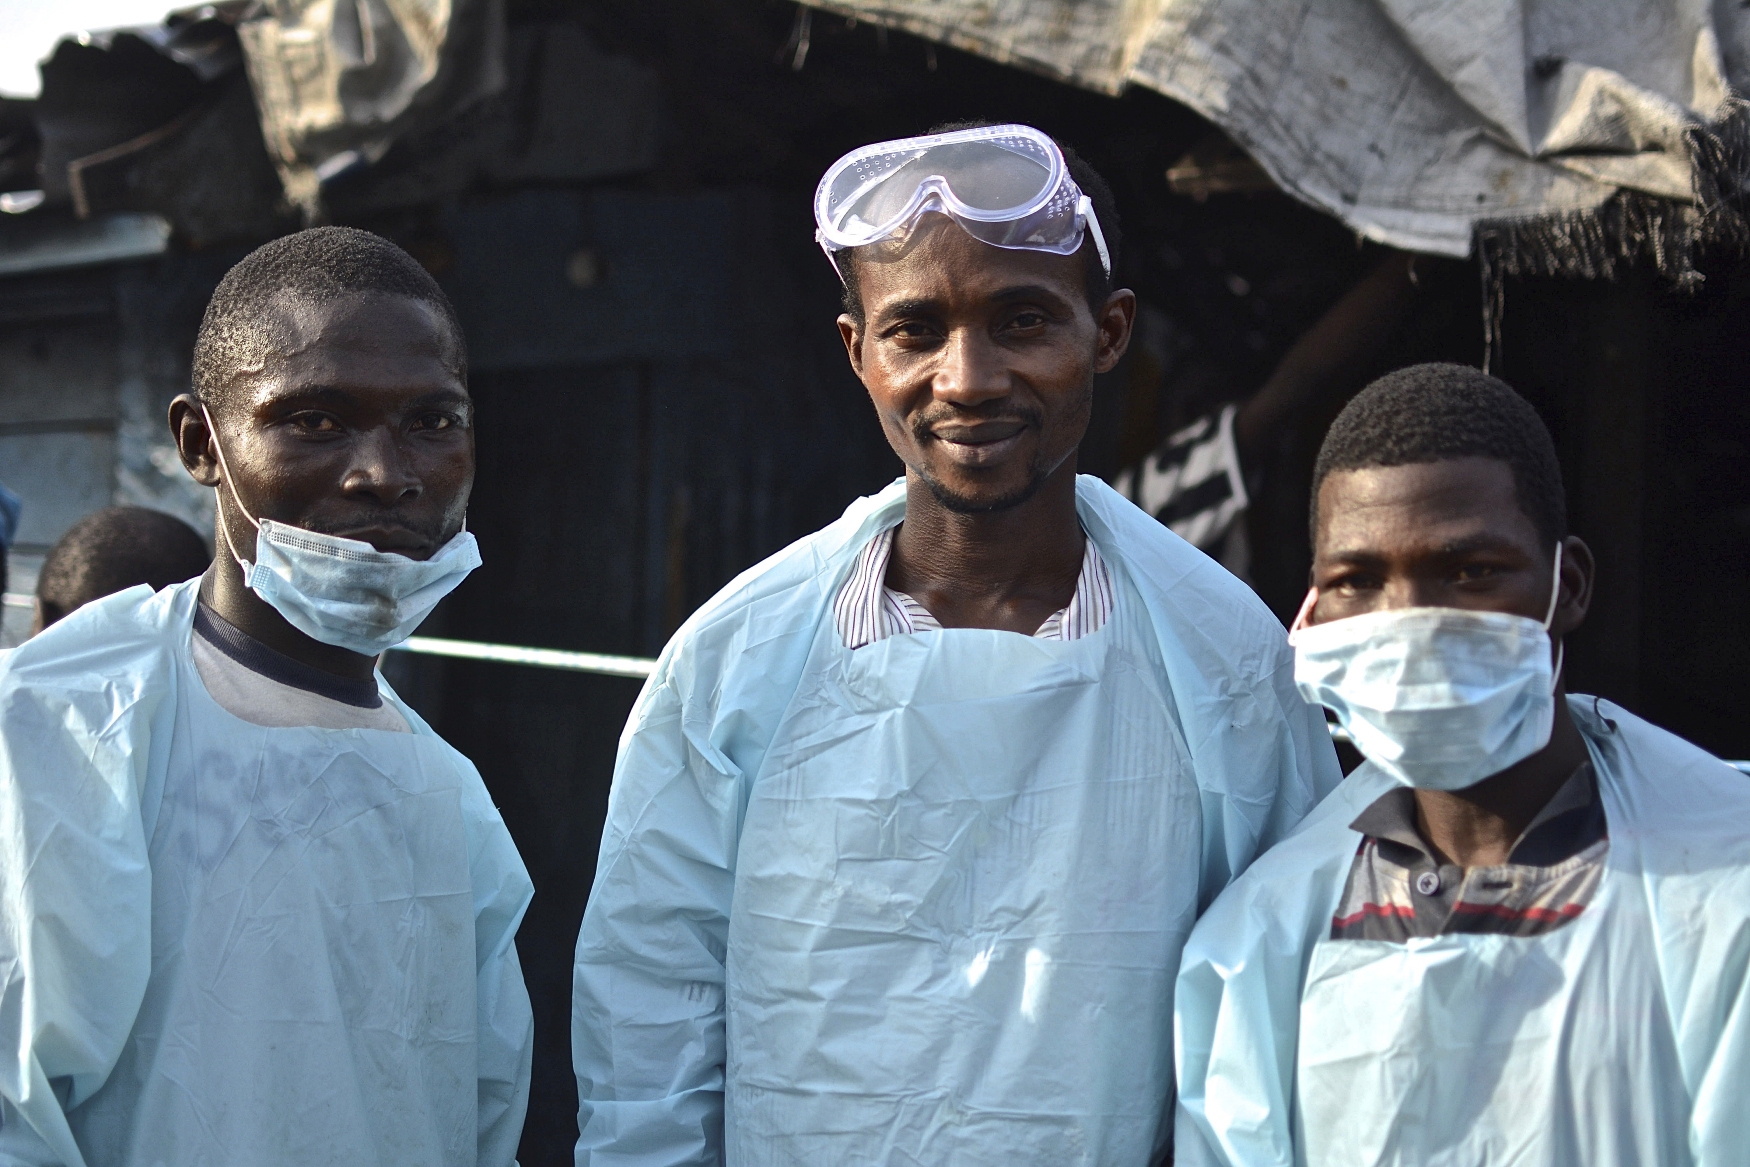 Community health volunteers in Sierra Leone